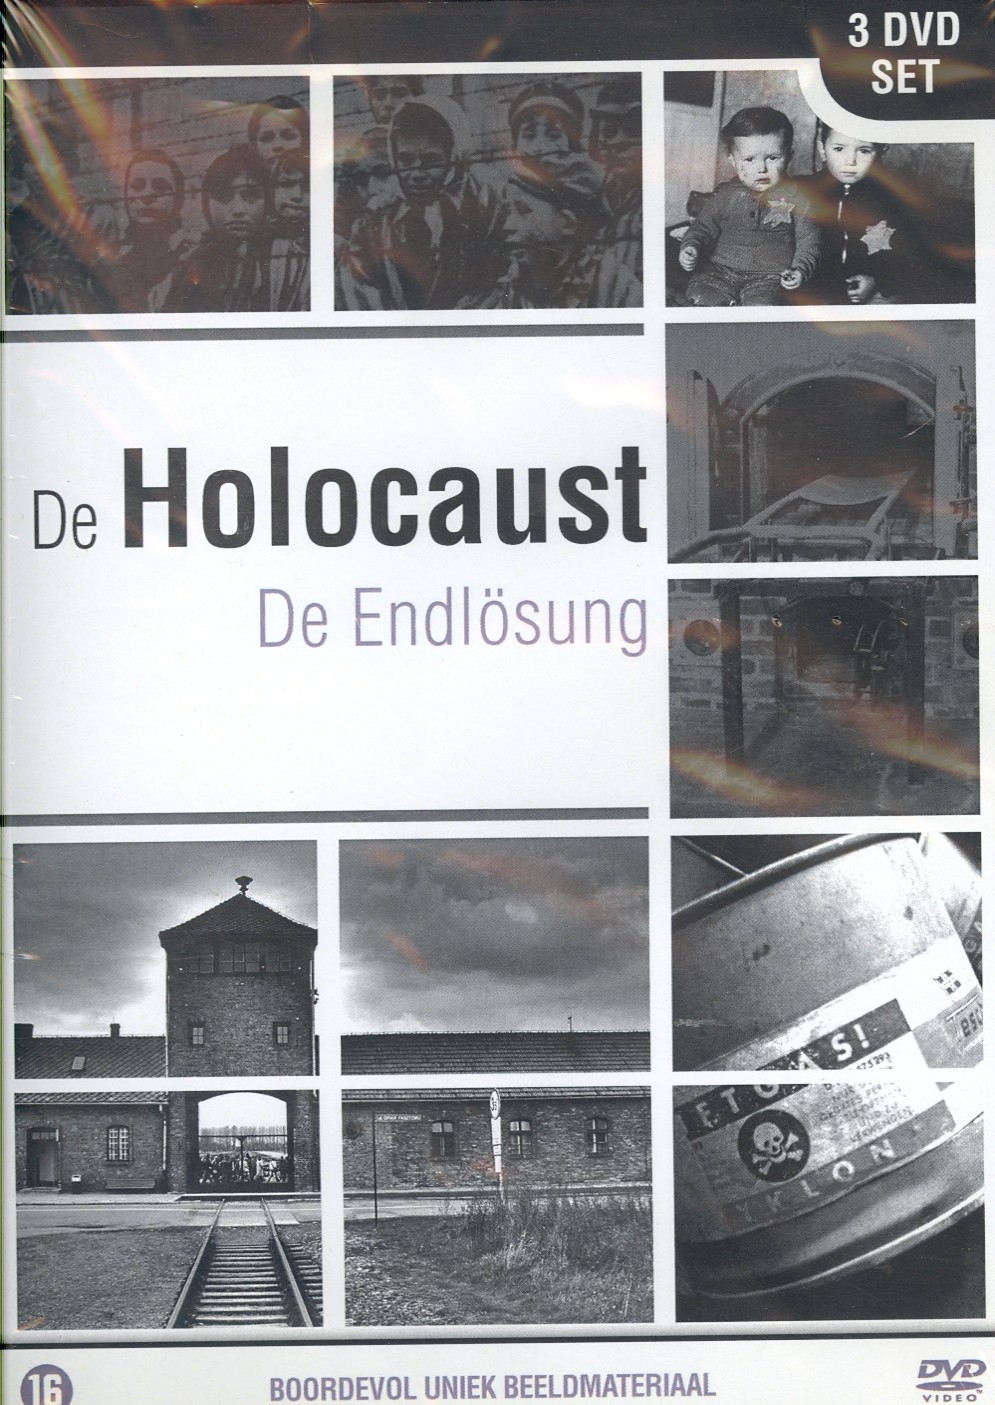 Holocaust - De Endlosing, De